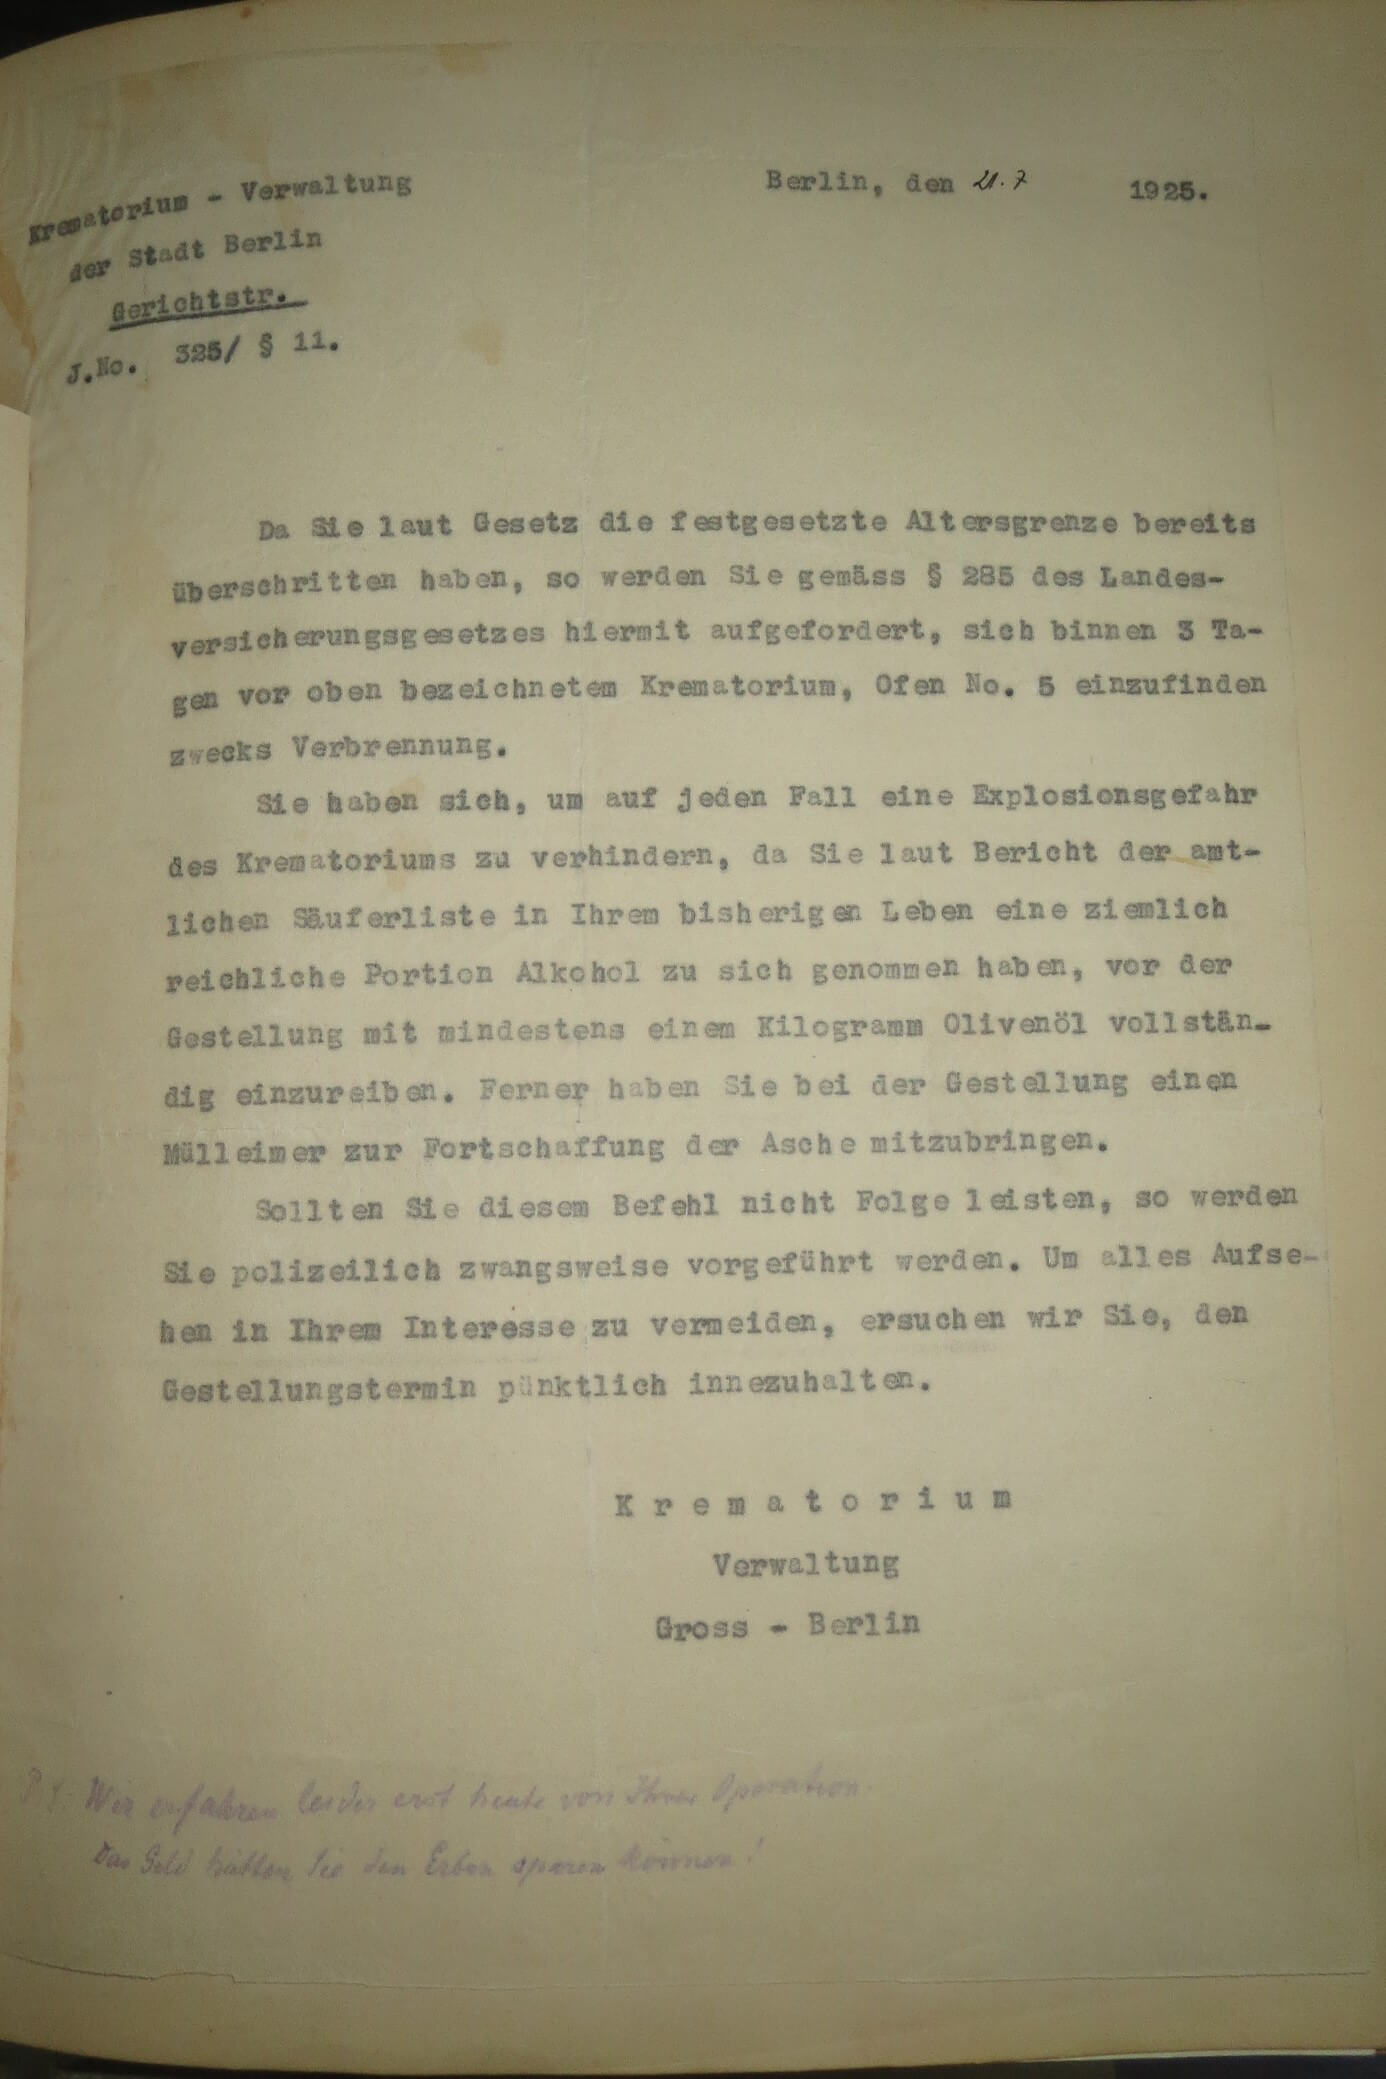  Ein schlechter Scherz (-Brief) vom 21.7.1925; die handgeschriebenen Zeilen lauten: „ Wir erfahren leider erst heute von Ihrer Operation. Das Geld hätten Sie den Erben sparen können!“